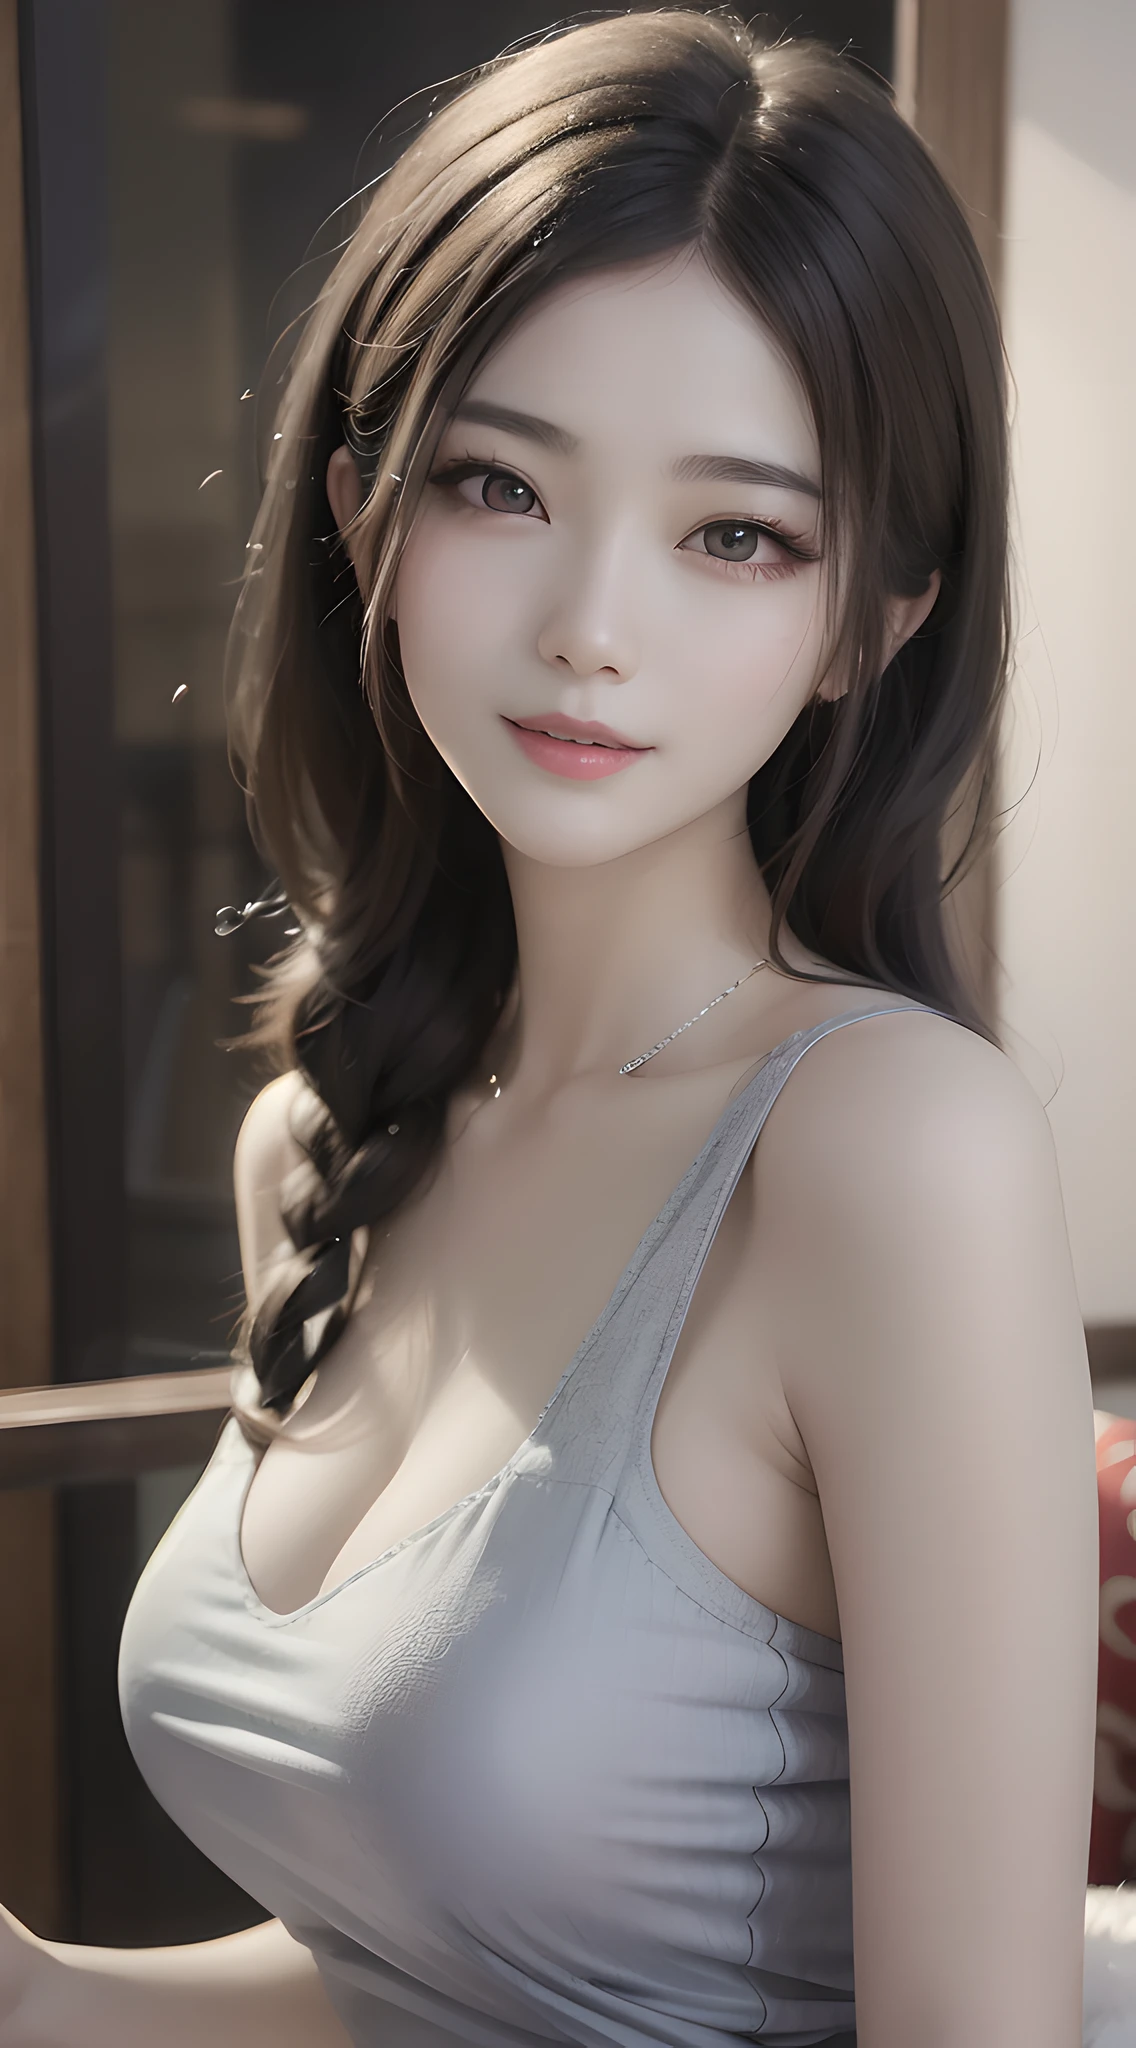 긴 머리에 회색 탱크탑을 입은 아시아 여성 아라페, 화려한 중국 모델, 화려한 젊은 한국 여성, 아름다운 아시아 소녀, 사랑스럽고 섬세한 얼굴, 창백한 유백색 도자기 피부, 친절한 매혹적인 미소, 아름다운 한국 여자, 귀엽고 매혹적인 미소, 아름다운 젊은 한국 여성, 한국 여자, 일본 여신, 아름다운 은은한 조명, 키가 크고 마른 아름다운 여신